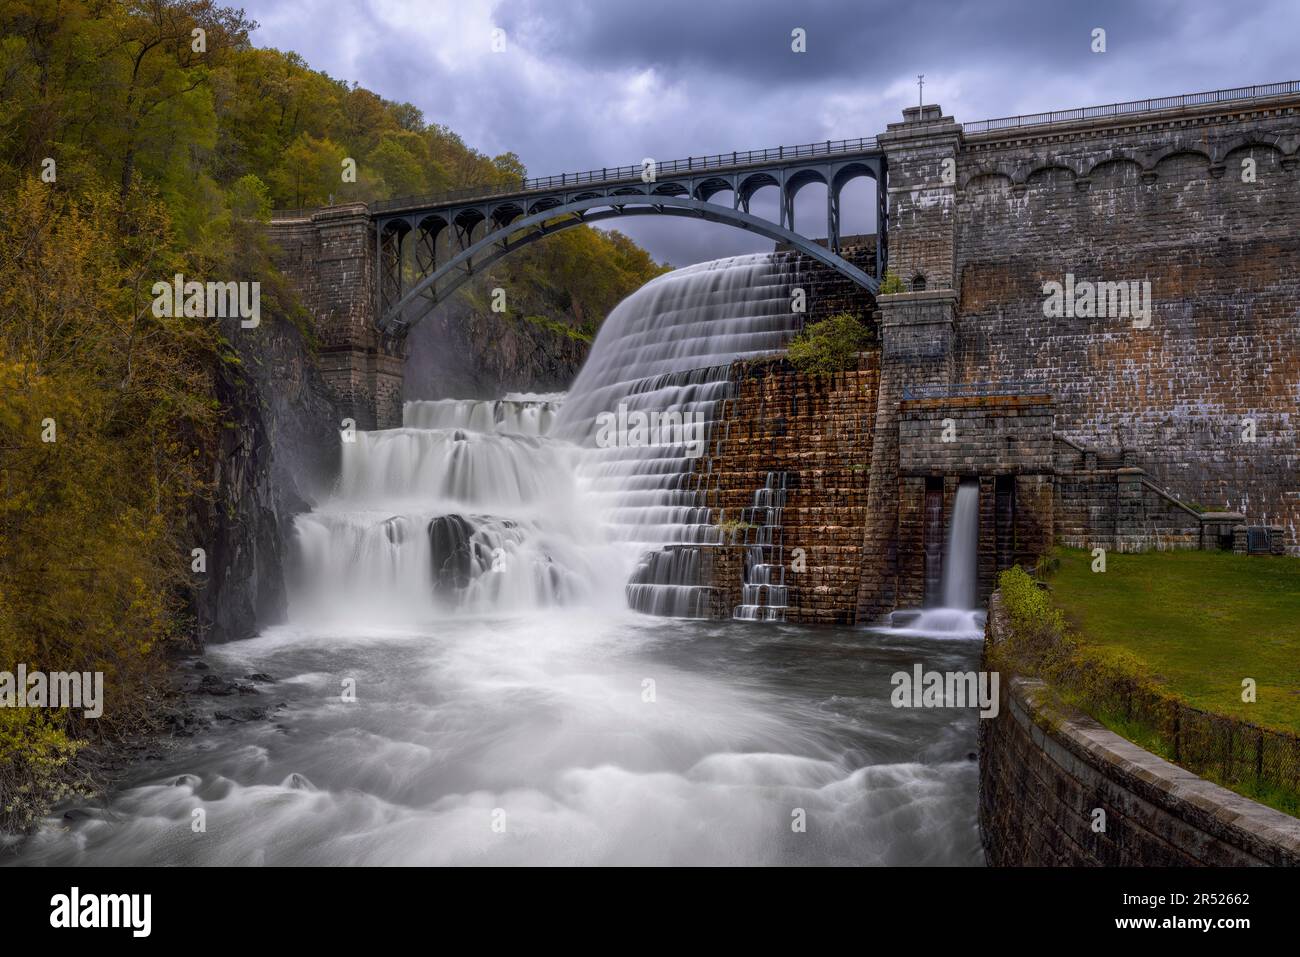 La diga di New Croton è una diga del fiume Croton, situata a New York, negli Stati Uniti. Colpisce il serbatoio di Croton, che copre 1.000 acri (400 Foto Stock